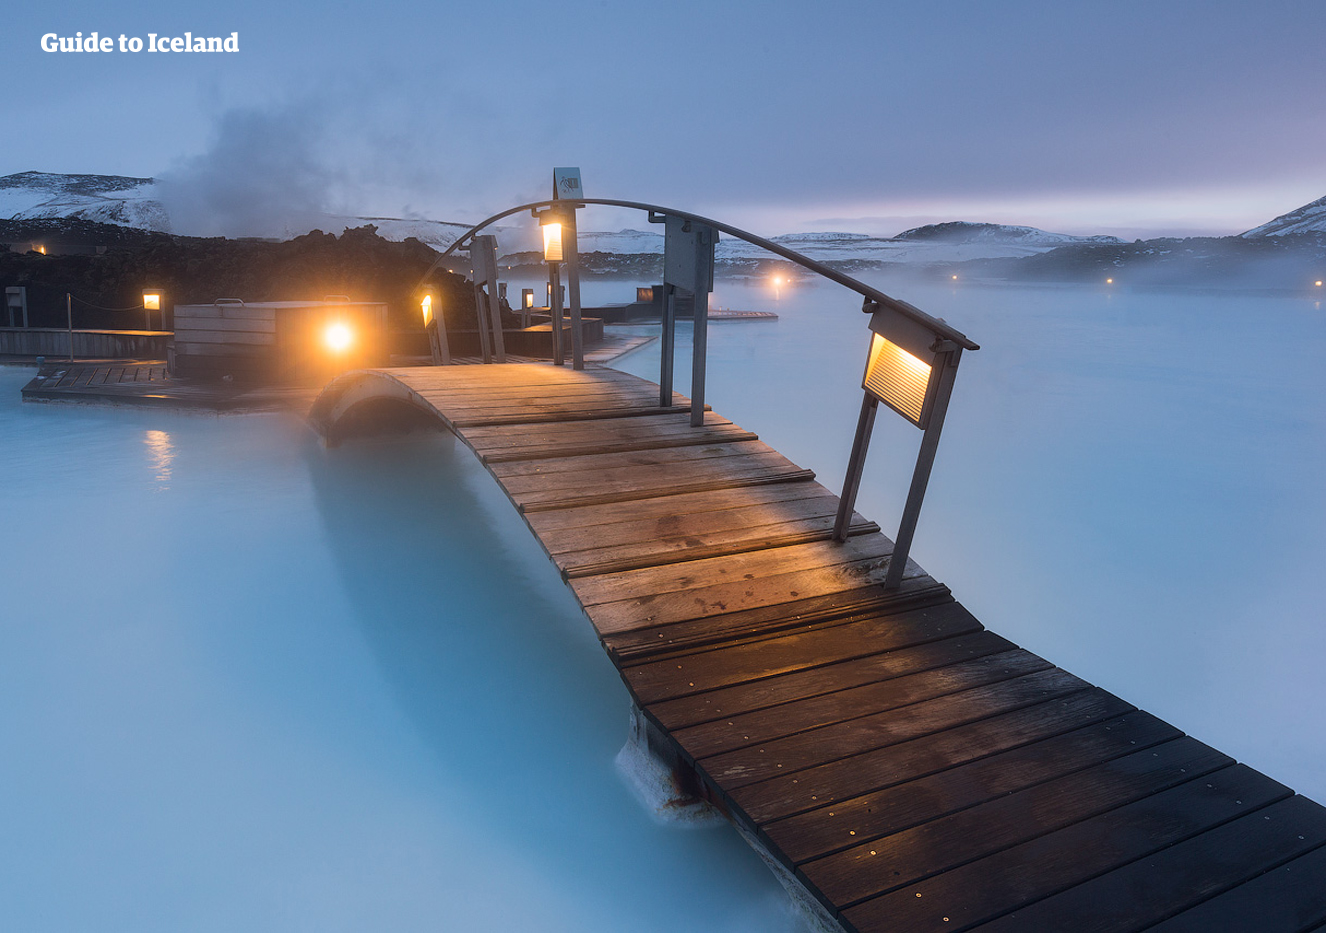 Visitar el spa geotérmico de la Laguna Azul (Blue Lagoon) es la mejor manera de terminar tu aventura en Islandia.